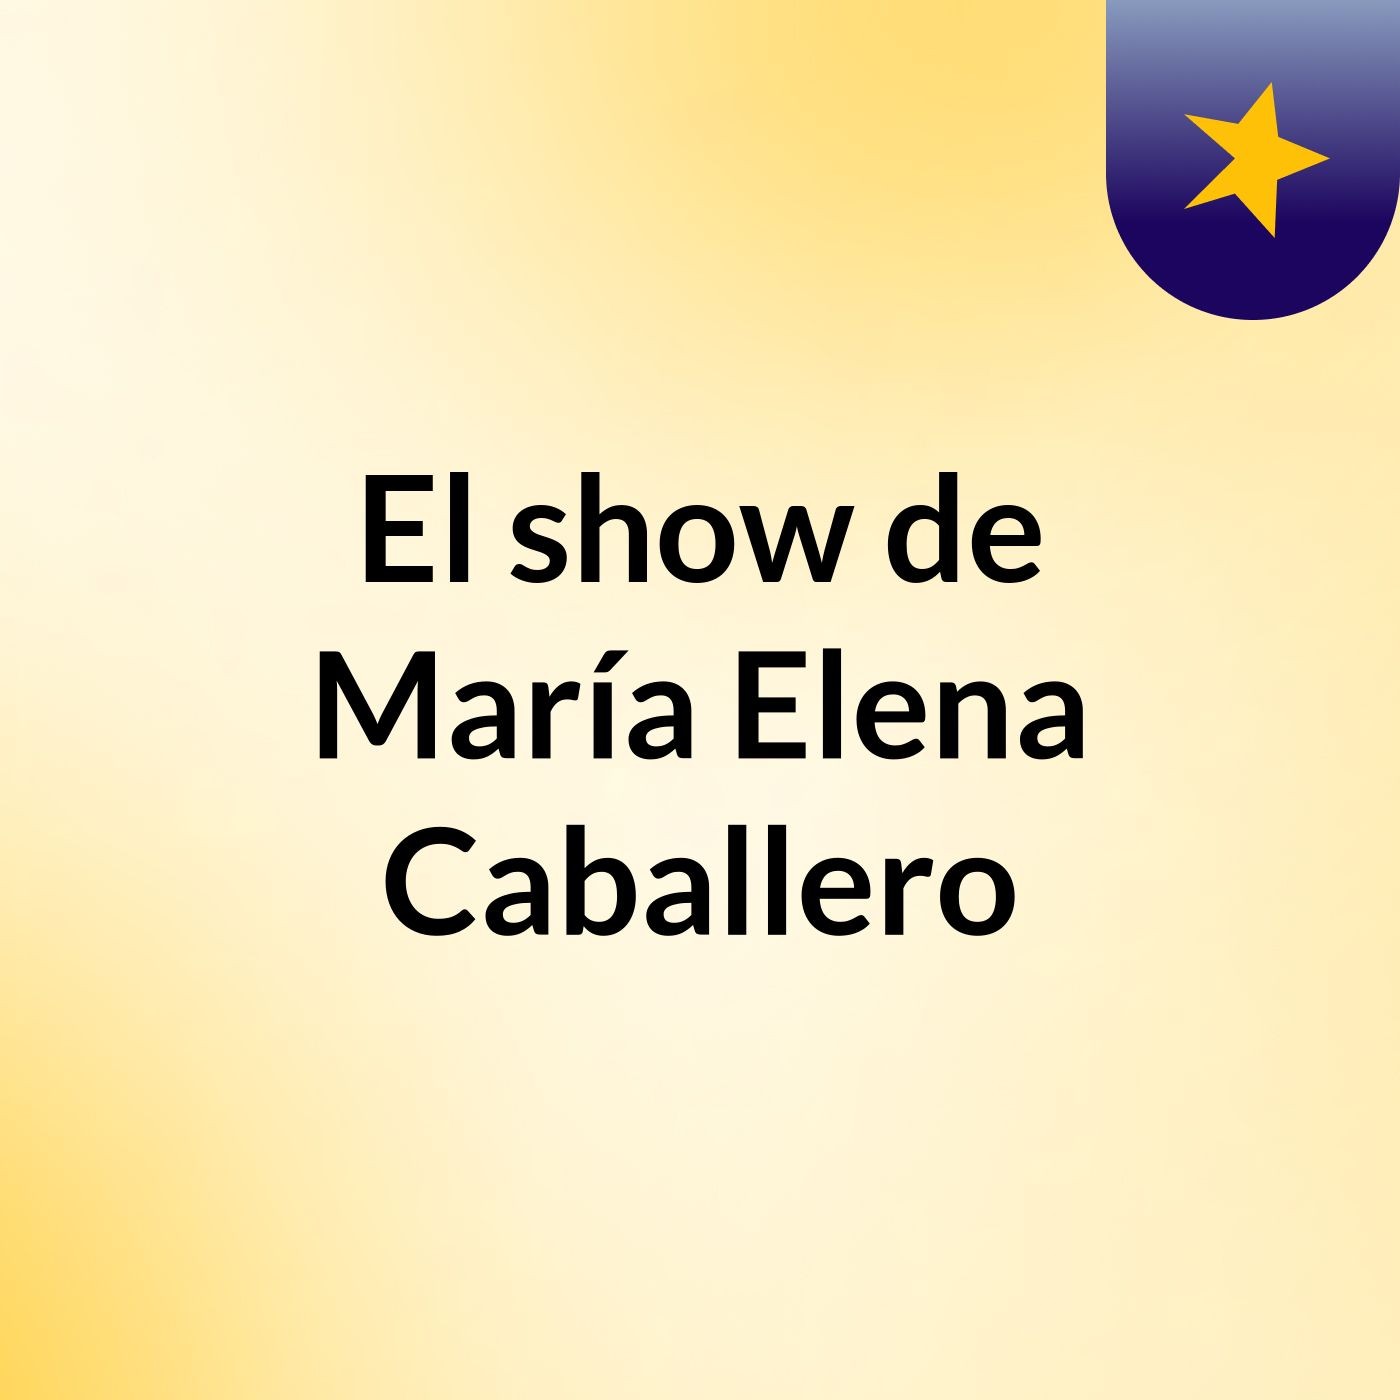 El show de María Elena Caballero